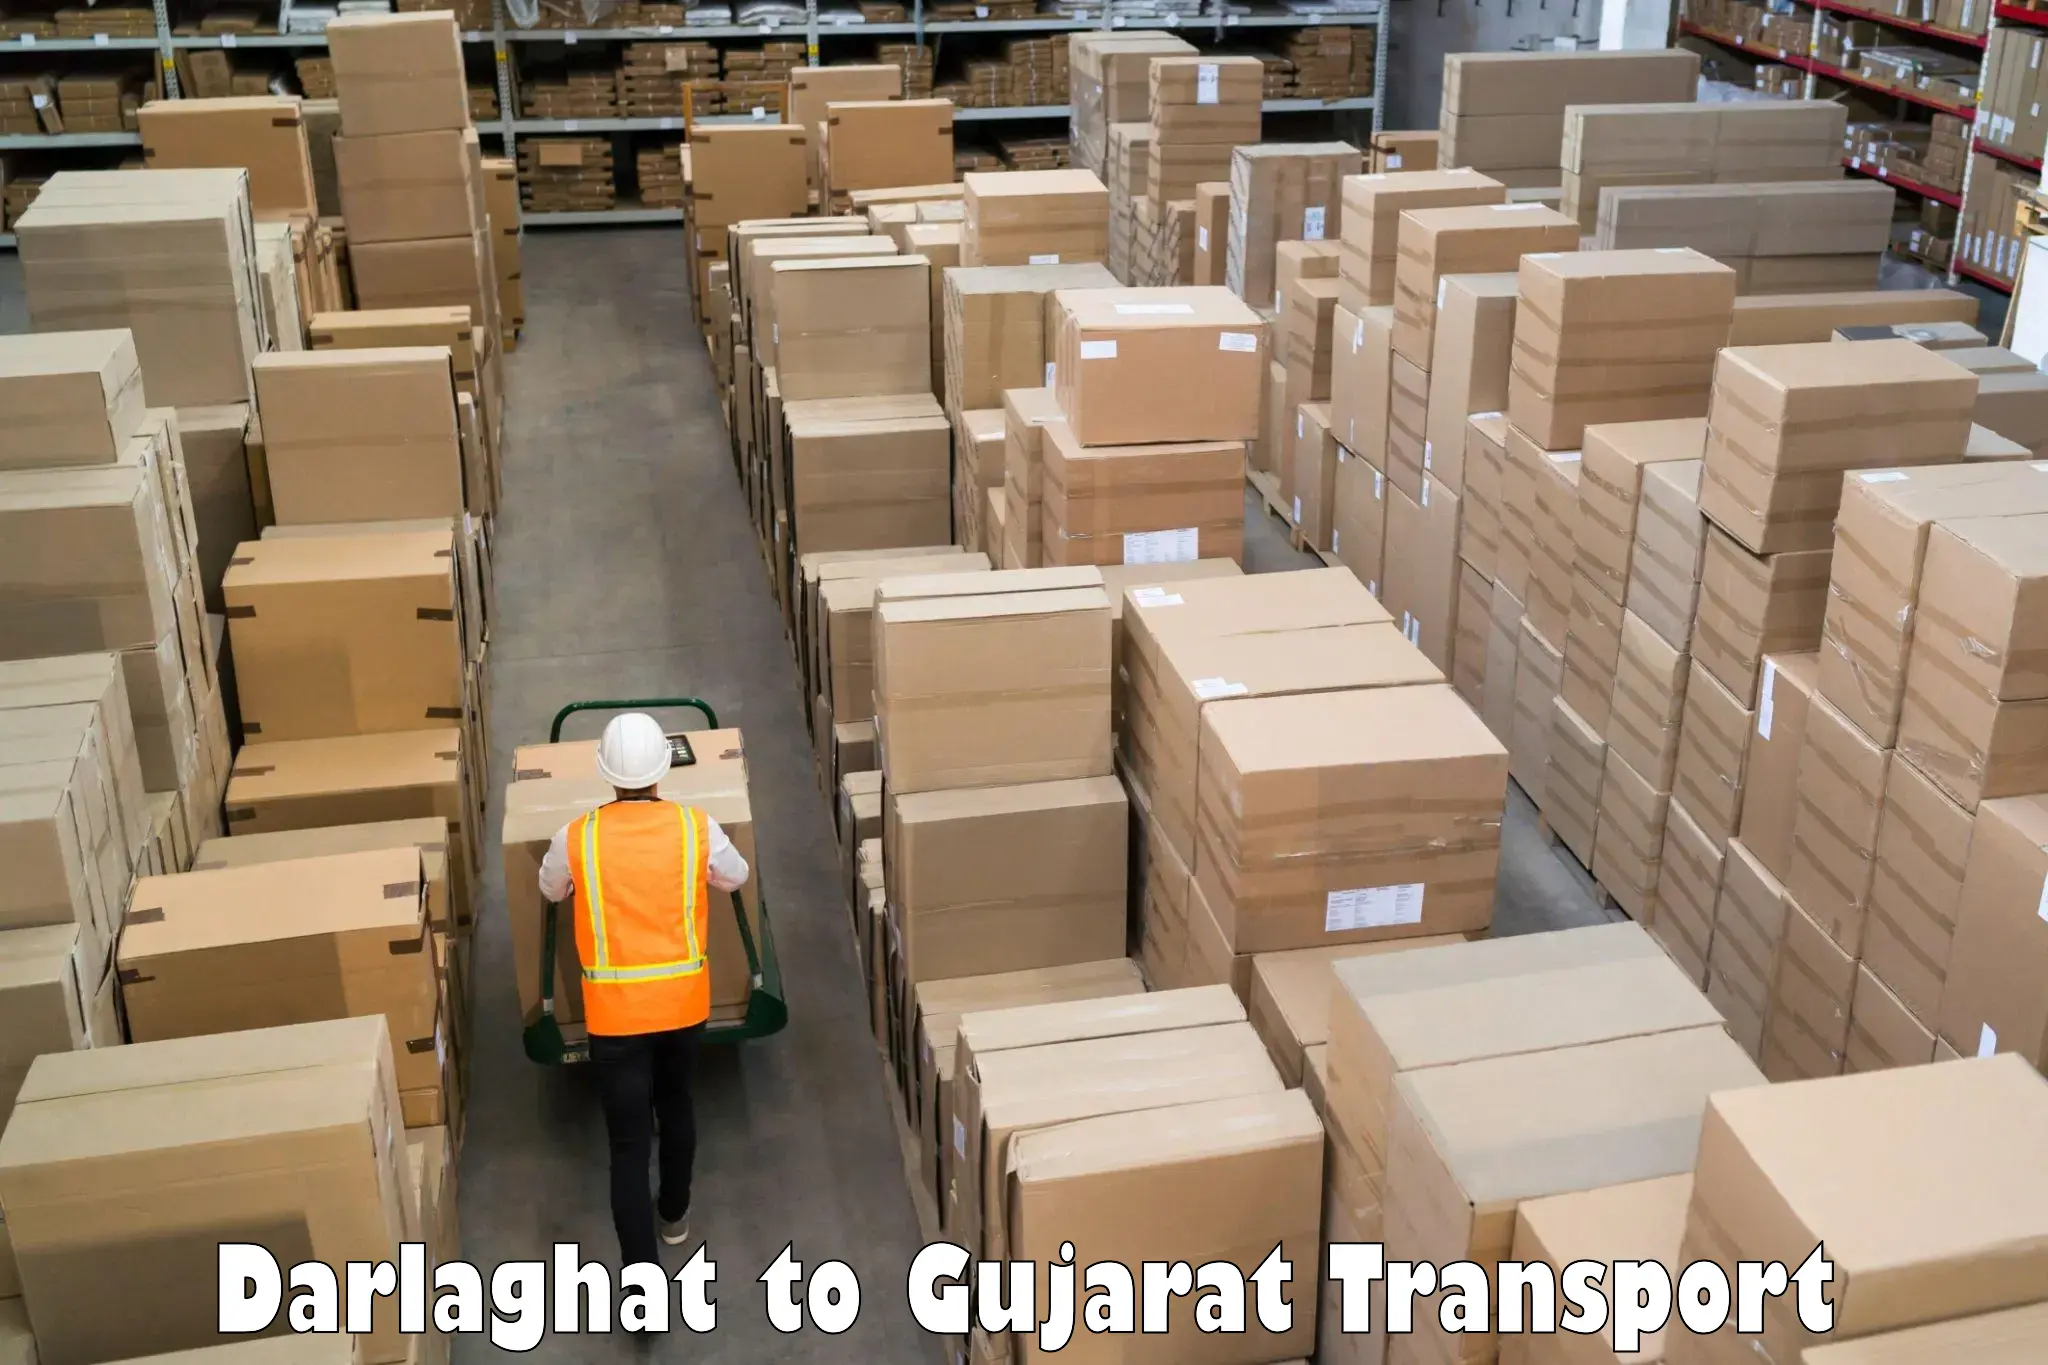 Online transport service Darlaghat to Dhoraji